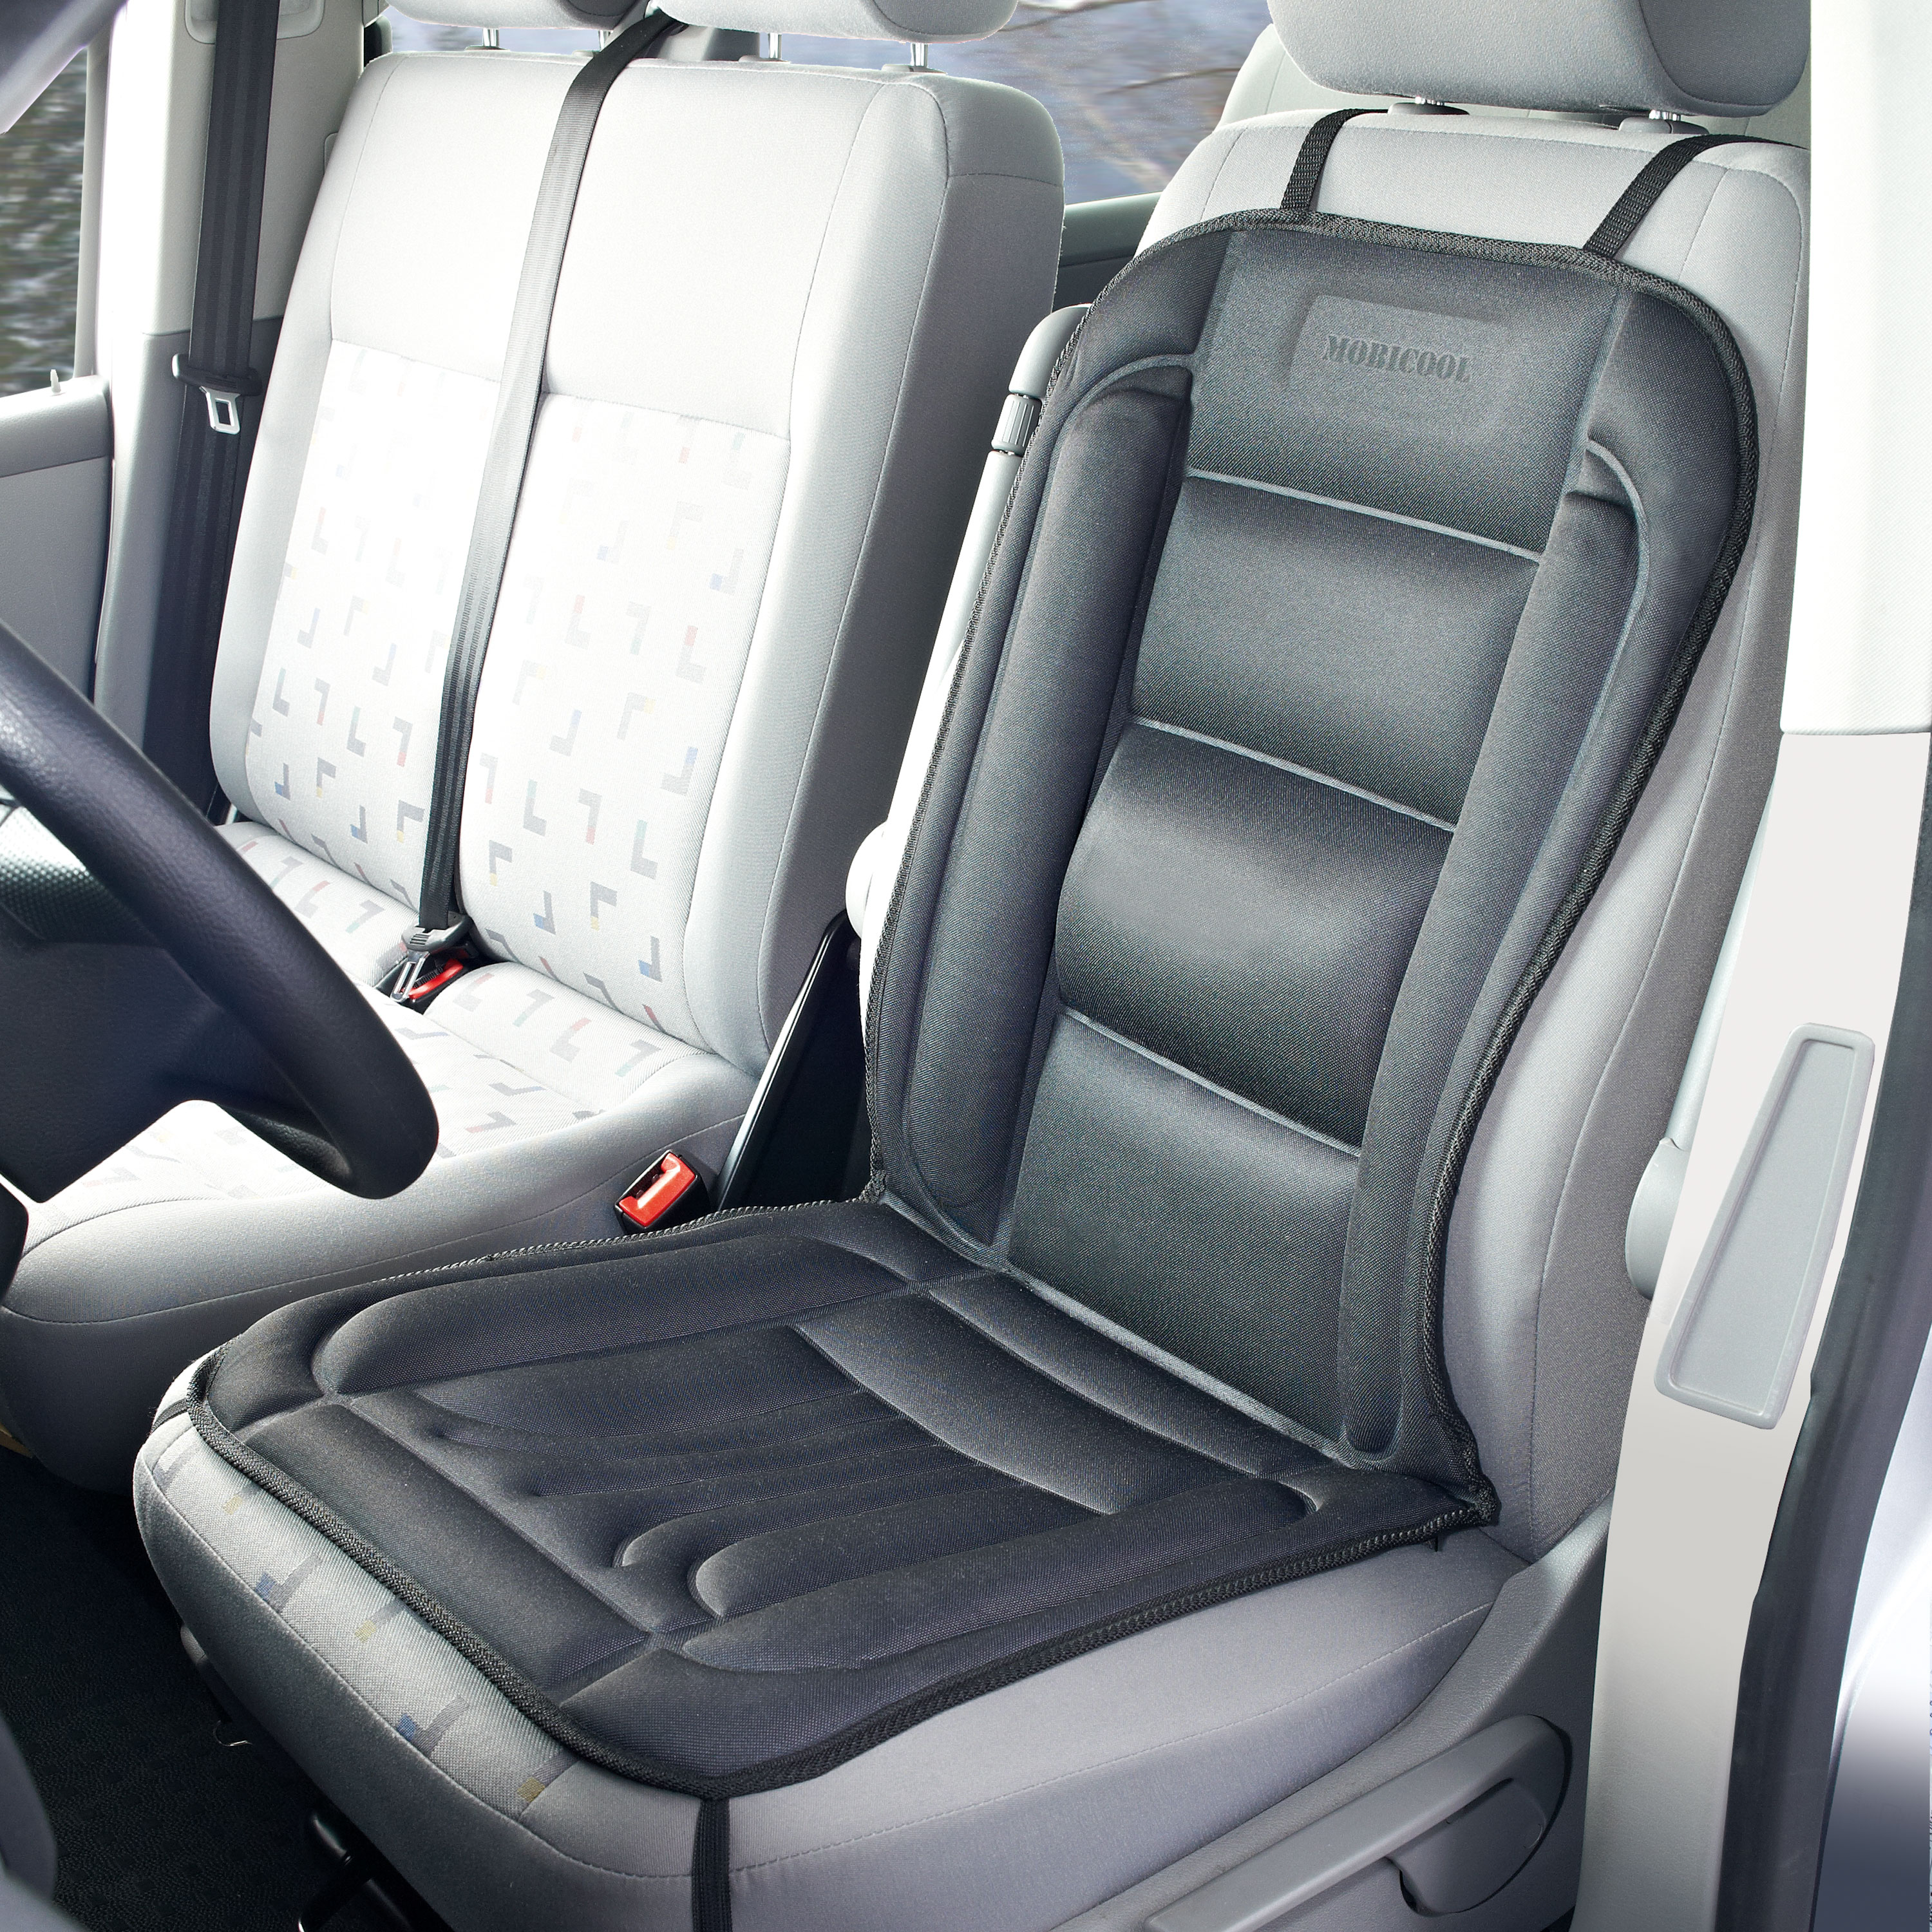 Sitzheizung beheizbare Sitzauflage für Auto Heizung Heizmatte 12V